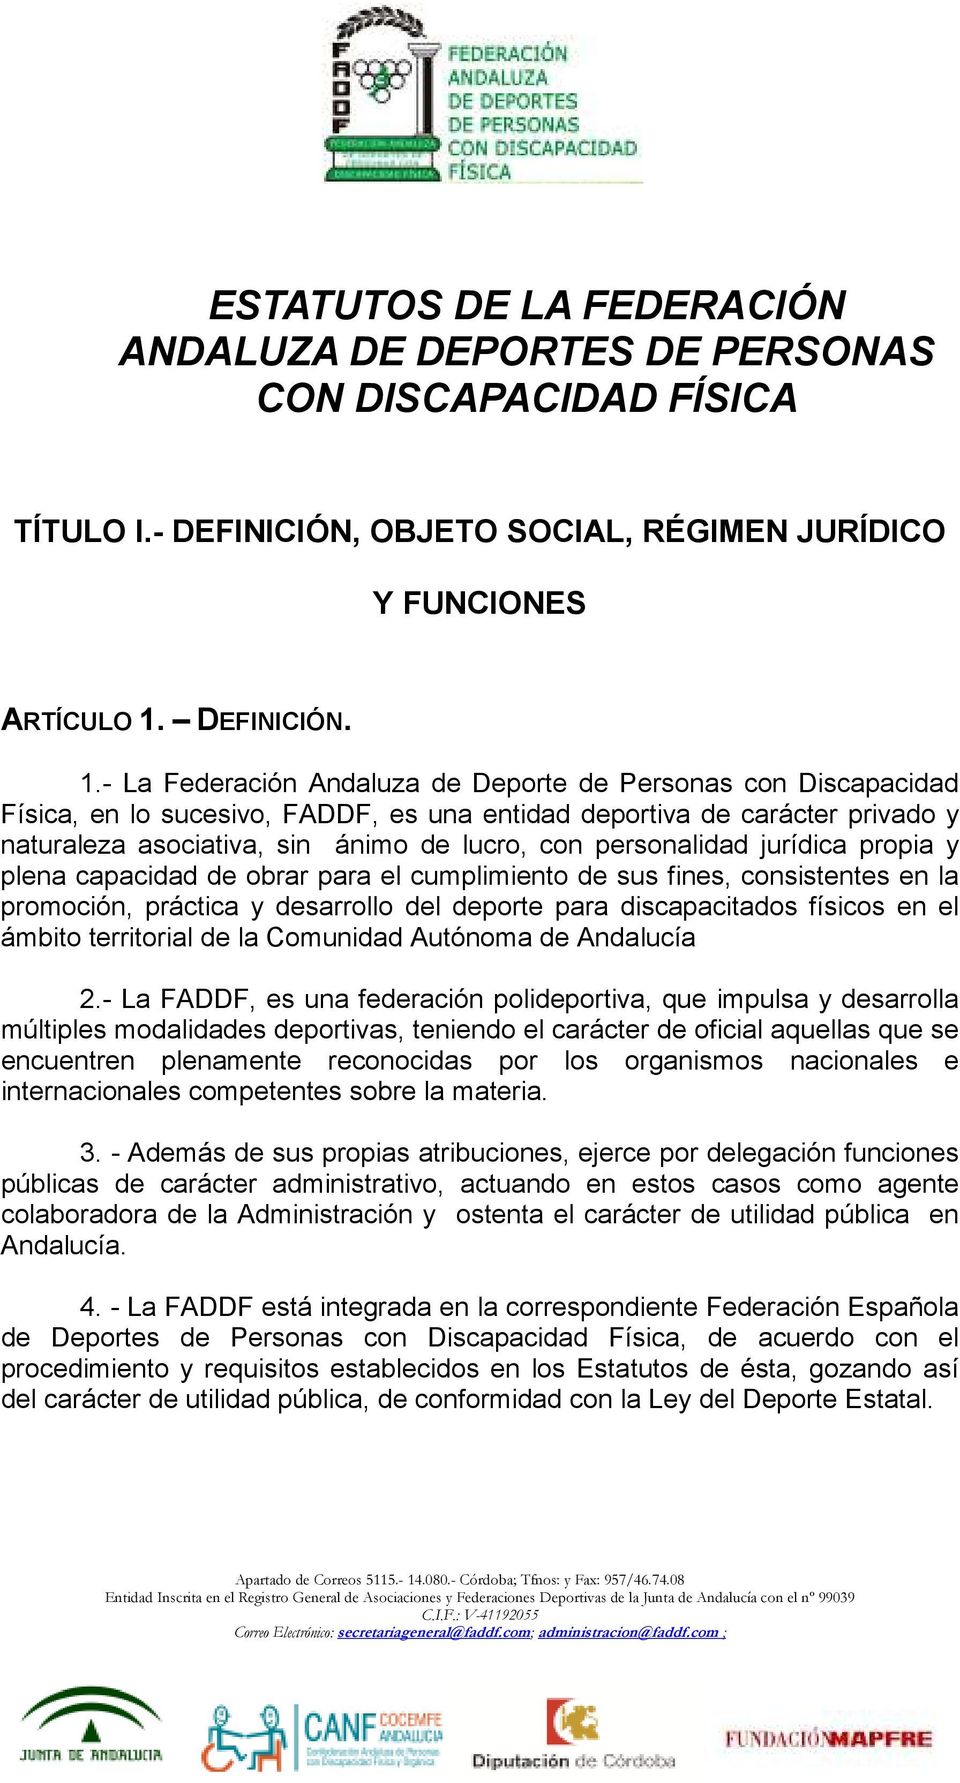 - La Federación Andaluza de Deporte de Personas con Discapacidad Física, en lo sucesivo, FADDF, es una entidad deportiva de carácter privado y naturaleza asociativa, sin ánimo de lucro, con